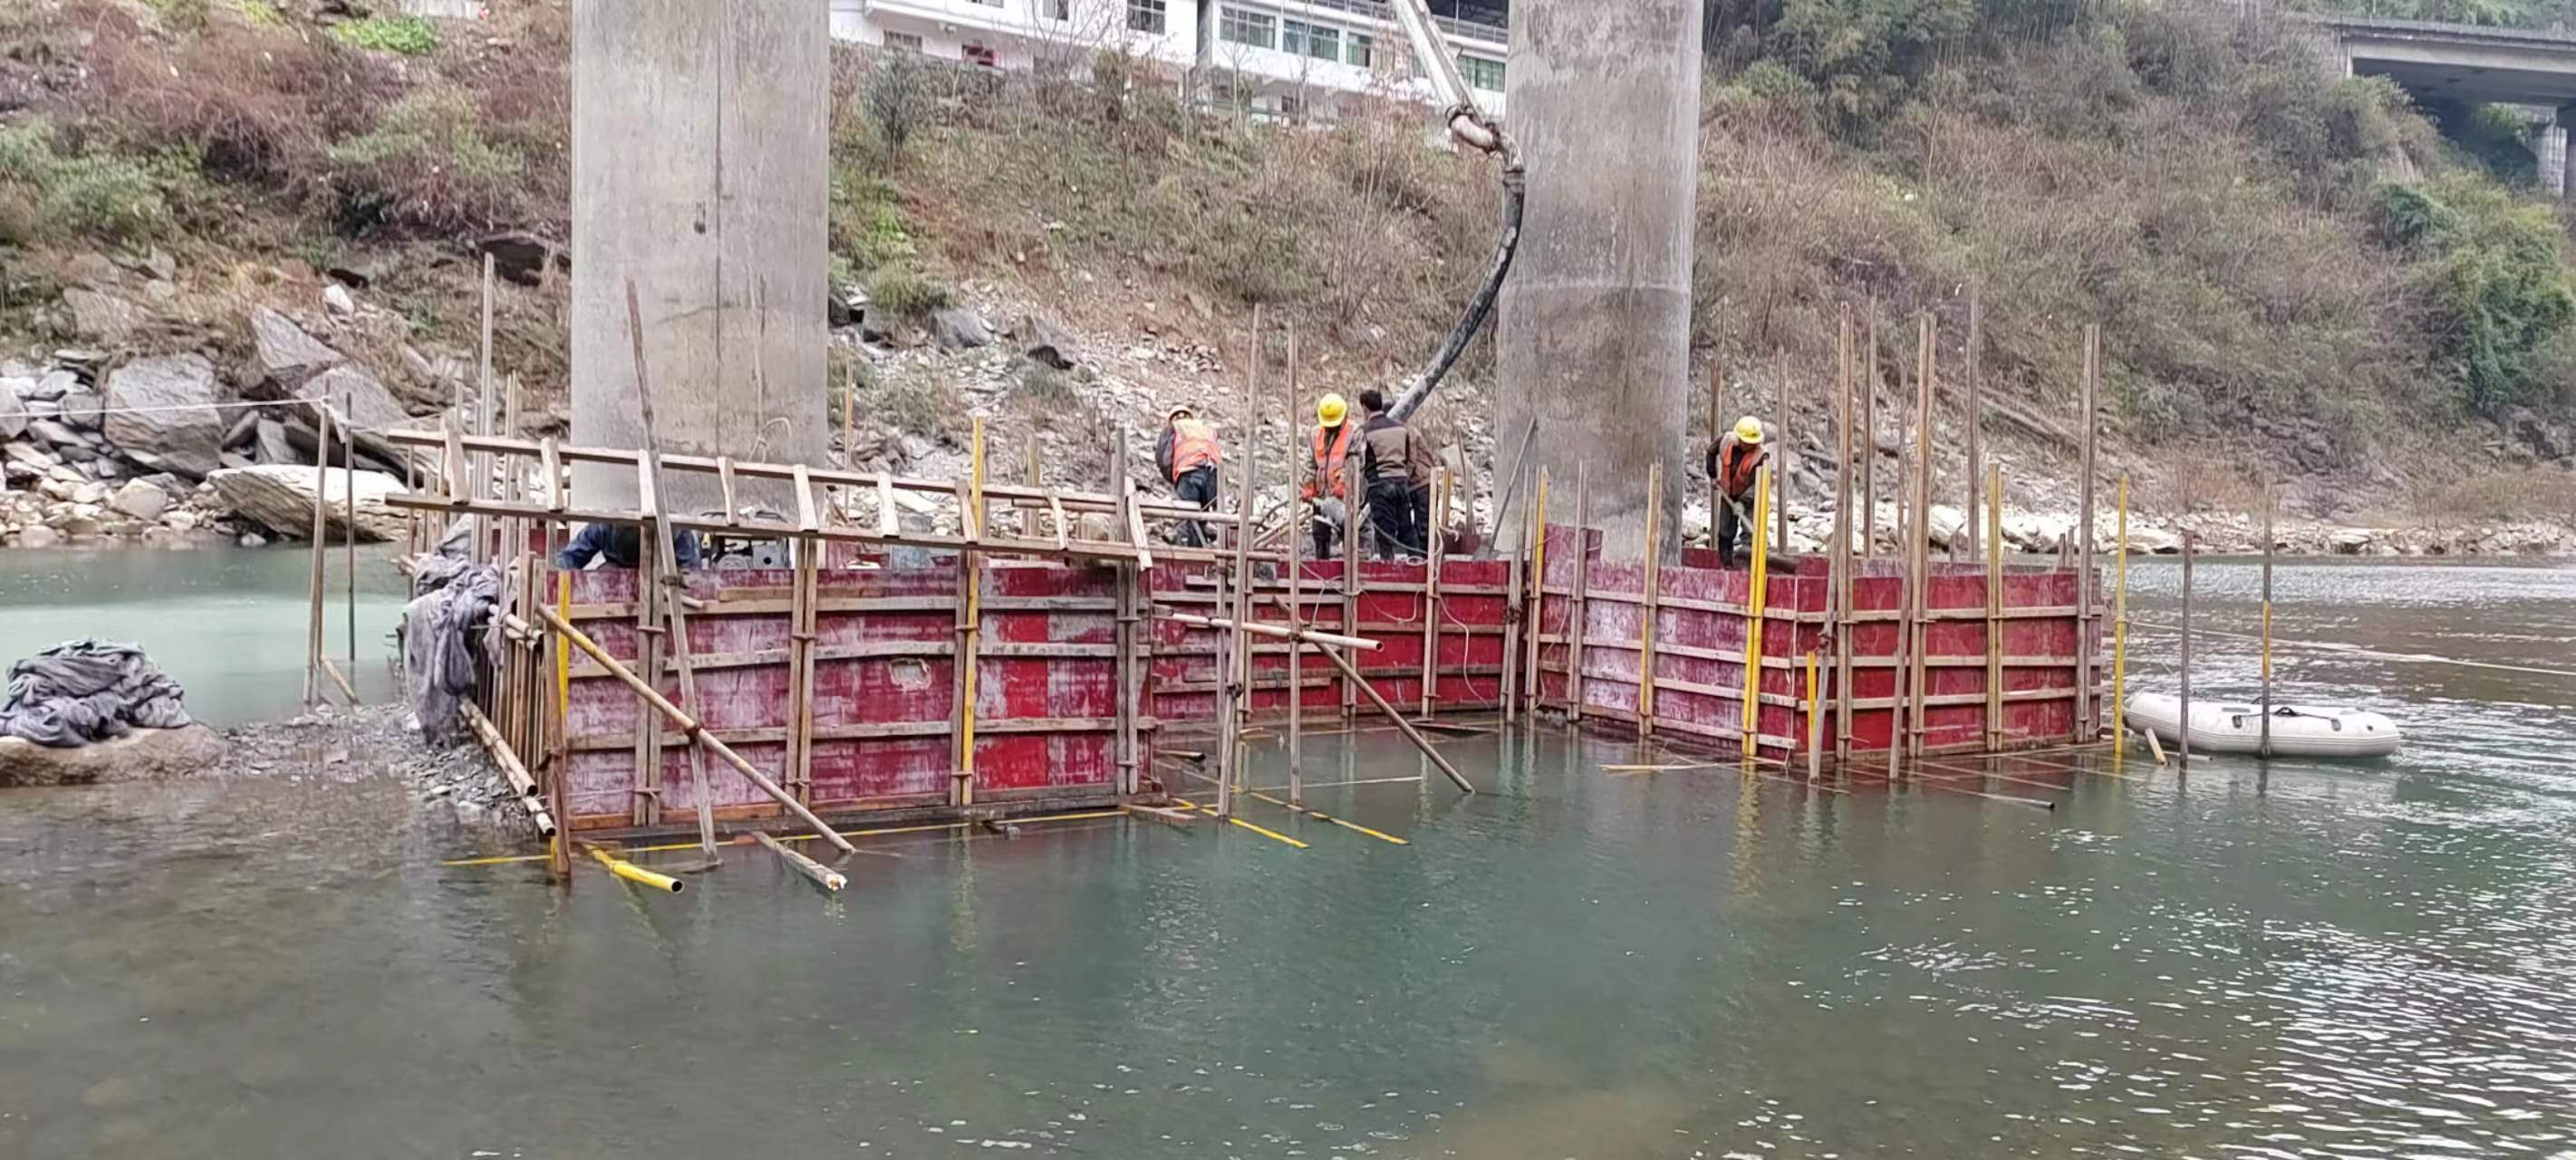 可克达拉水利工程施工中堤坝渗漏原因以及防渗加固技术